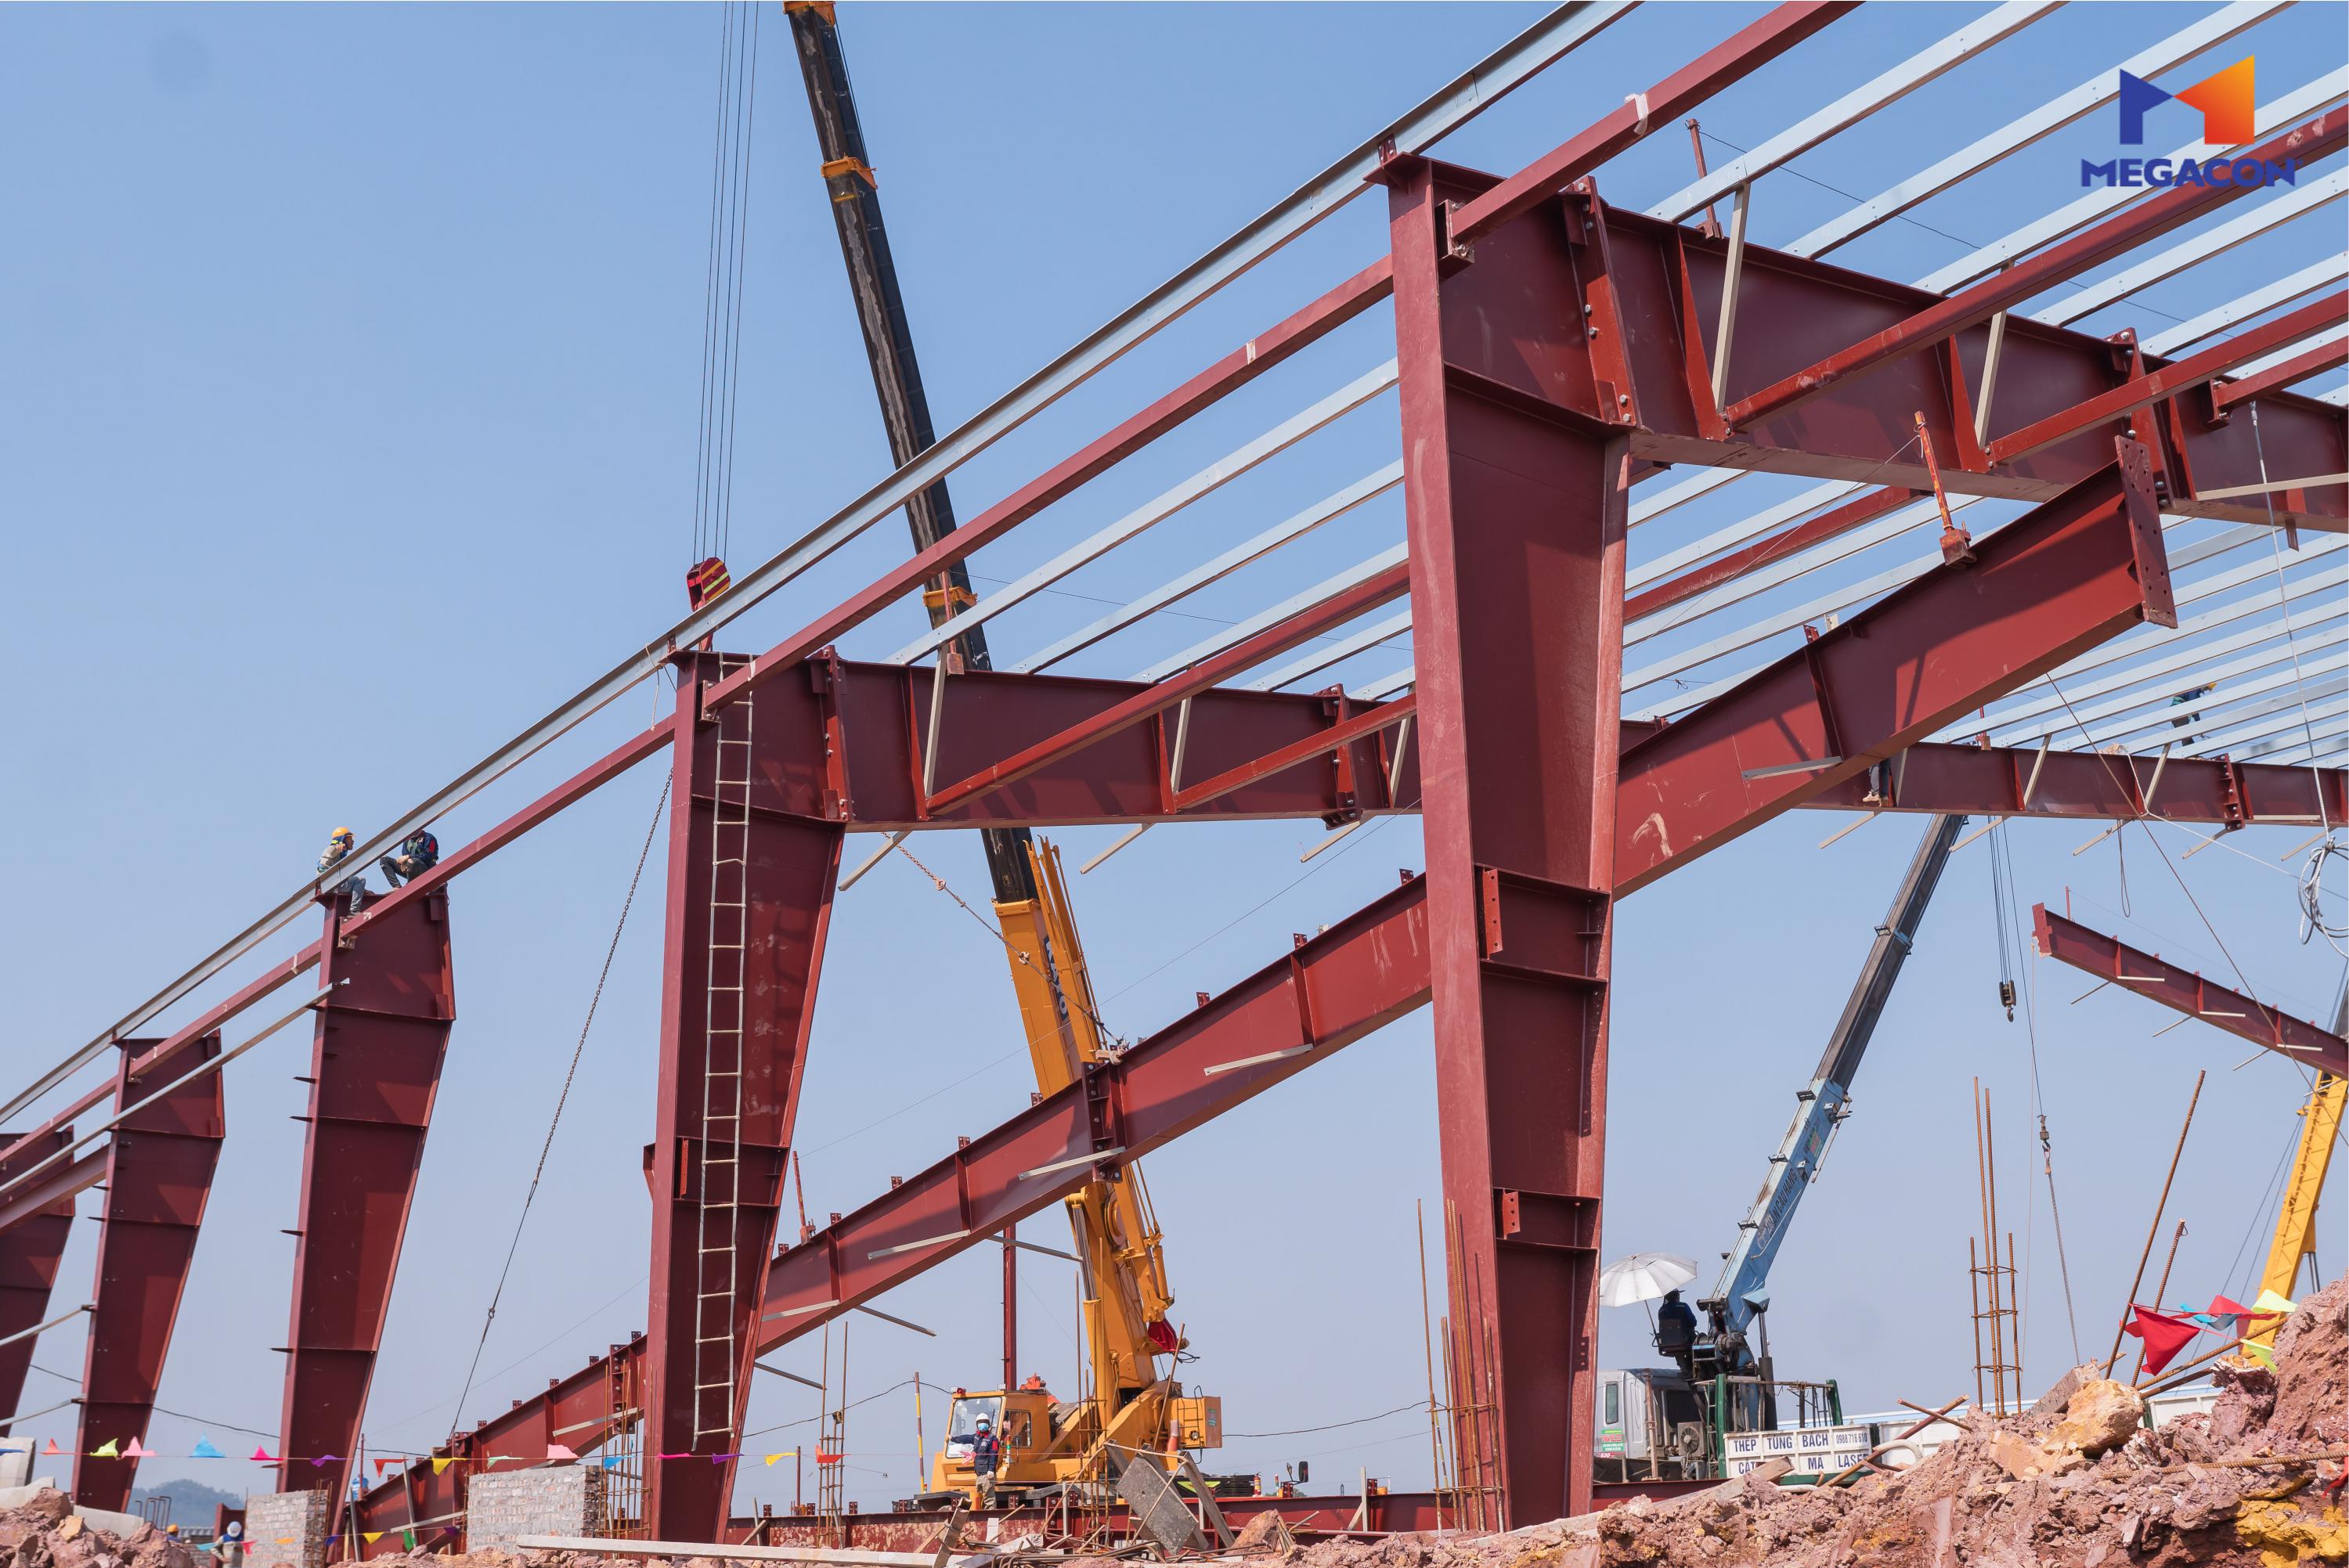 MEGACON lắp dựng kết cấu thép Block 4A khẩu độ 75m tại dự án Trung tâm công nghiệp GNP Yên Bình 2